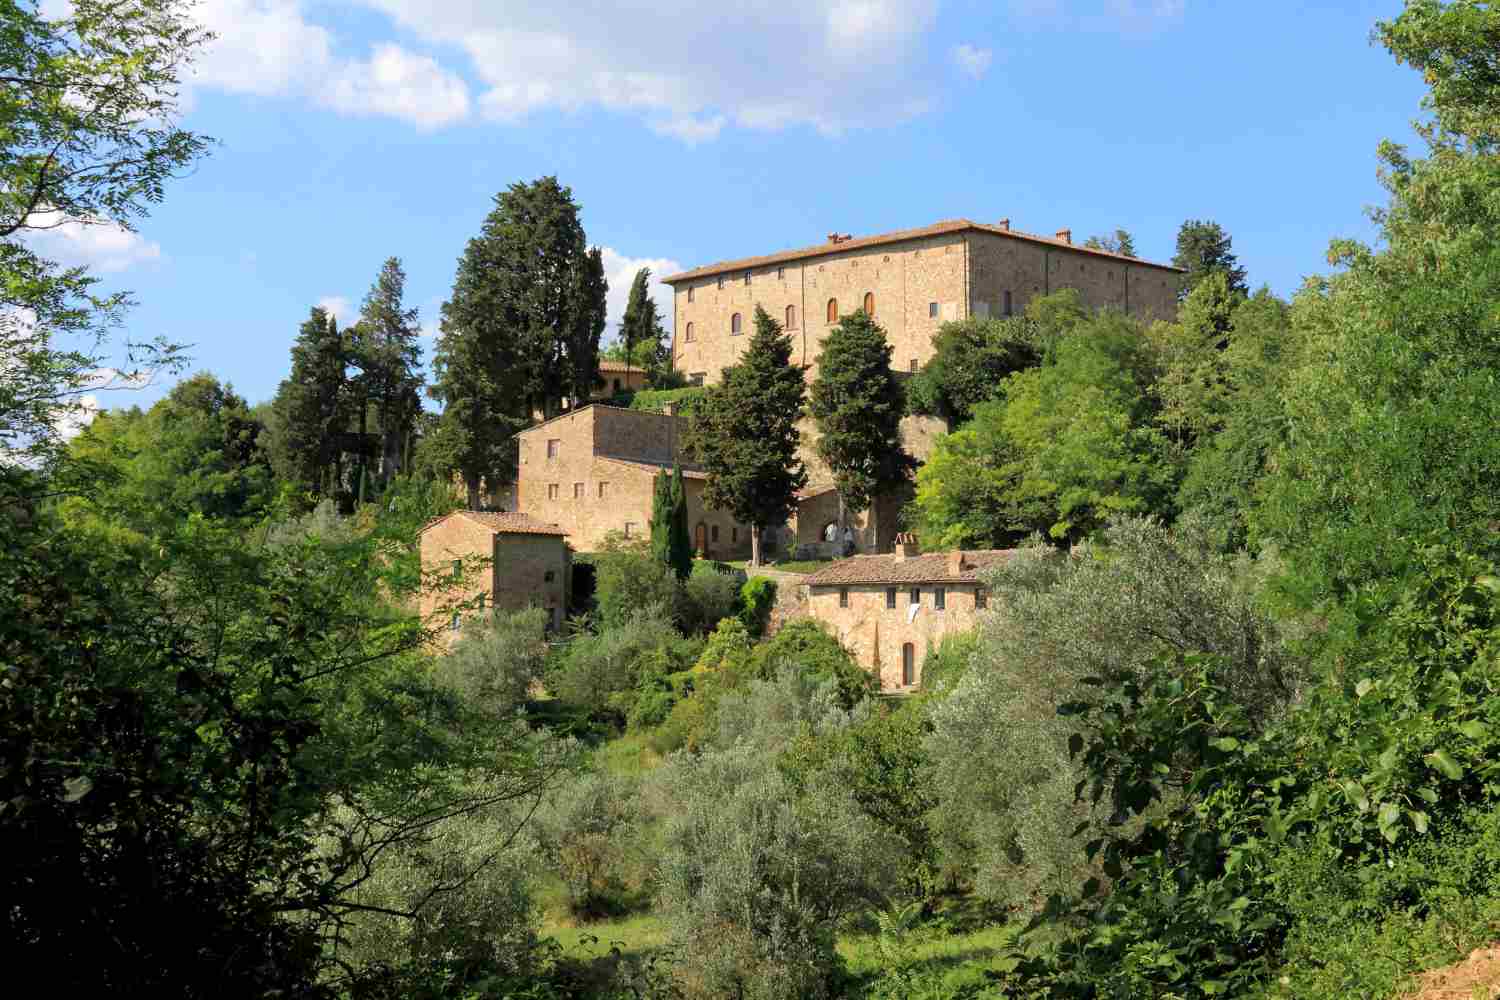 Castello di Bibbione, Tuscany - Italy